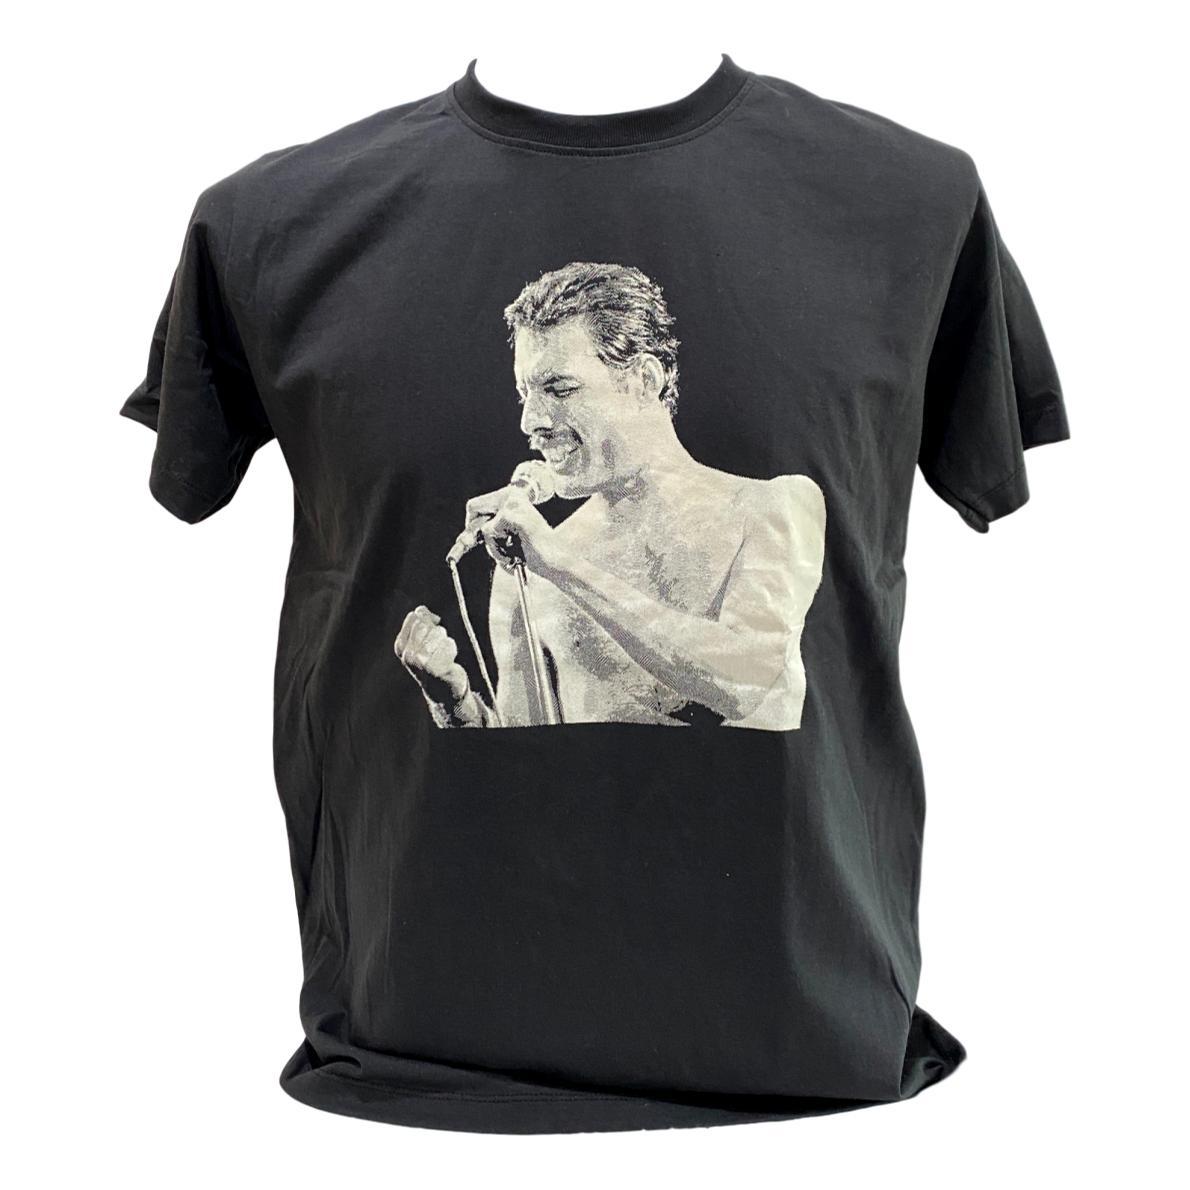 【送料無料】クイーン Queen フレディマーキュリー Freddie Mercury プリントTシャツ バンドTシャツ レディース メンズ